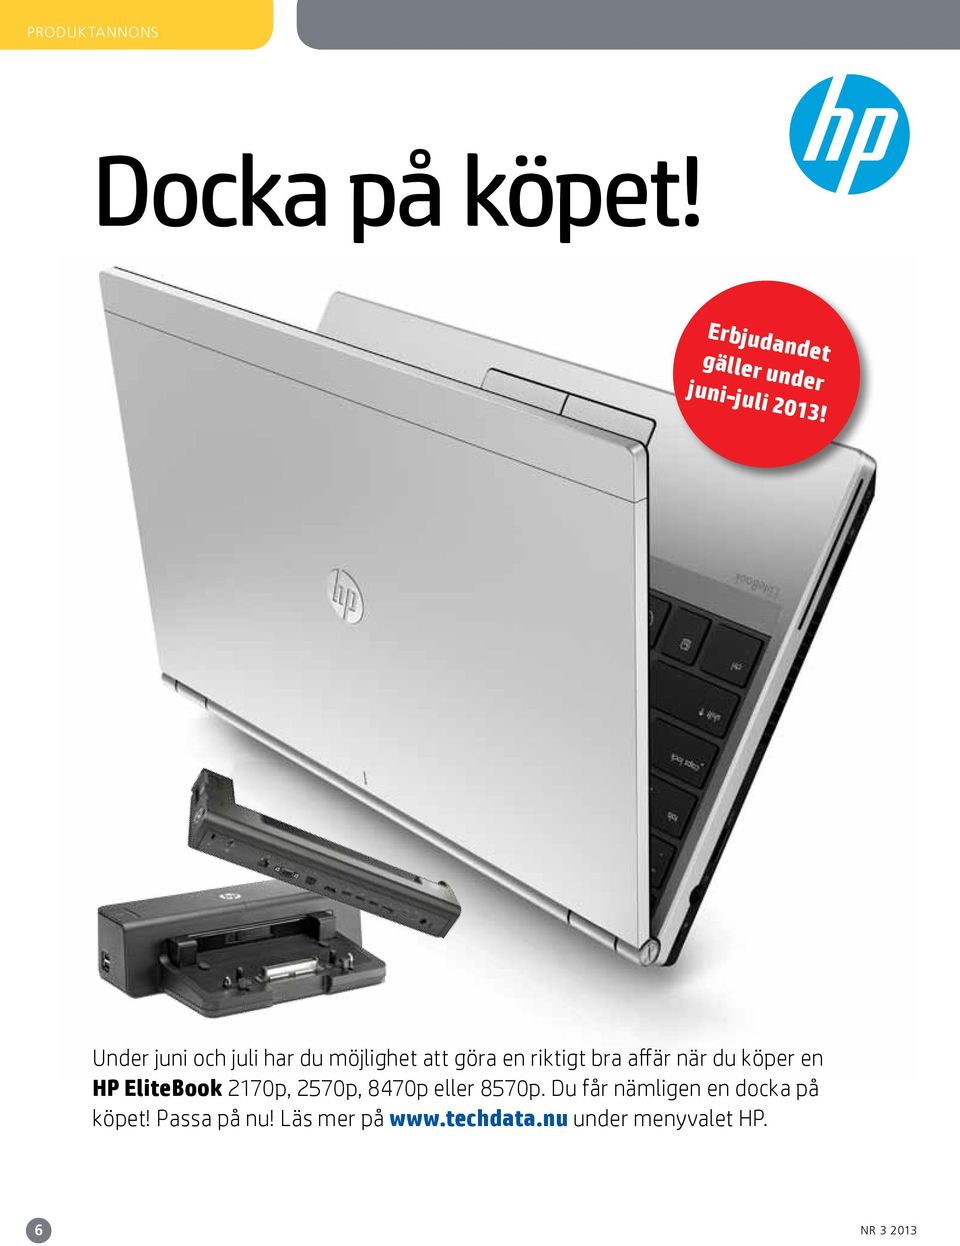 köper en HP EliteBook 2170p, 2570p, 8470p eller 8570p.